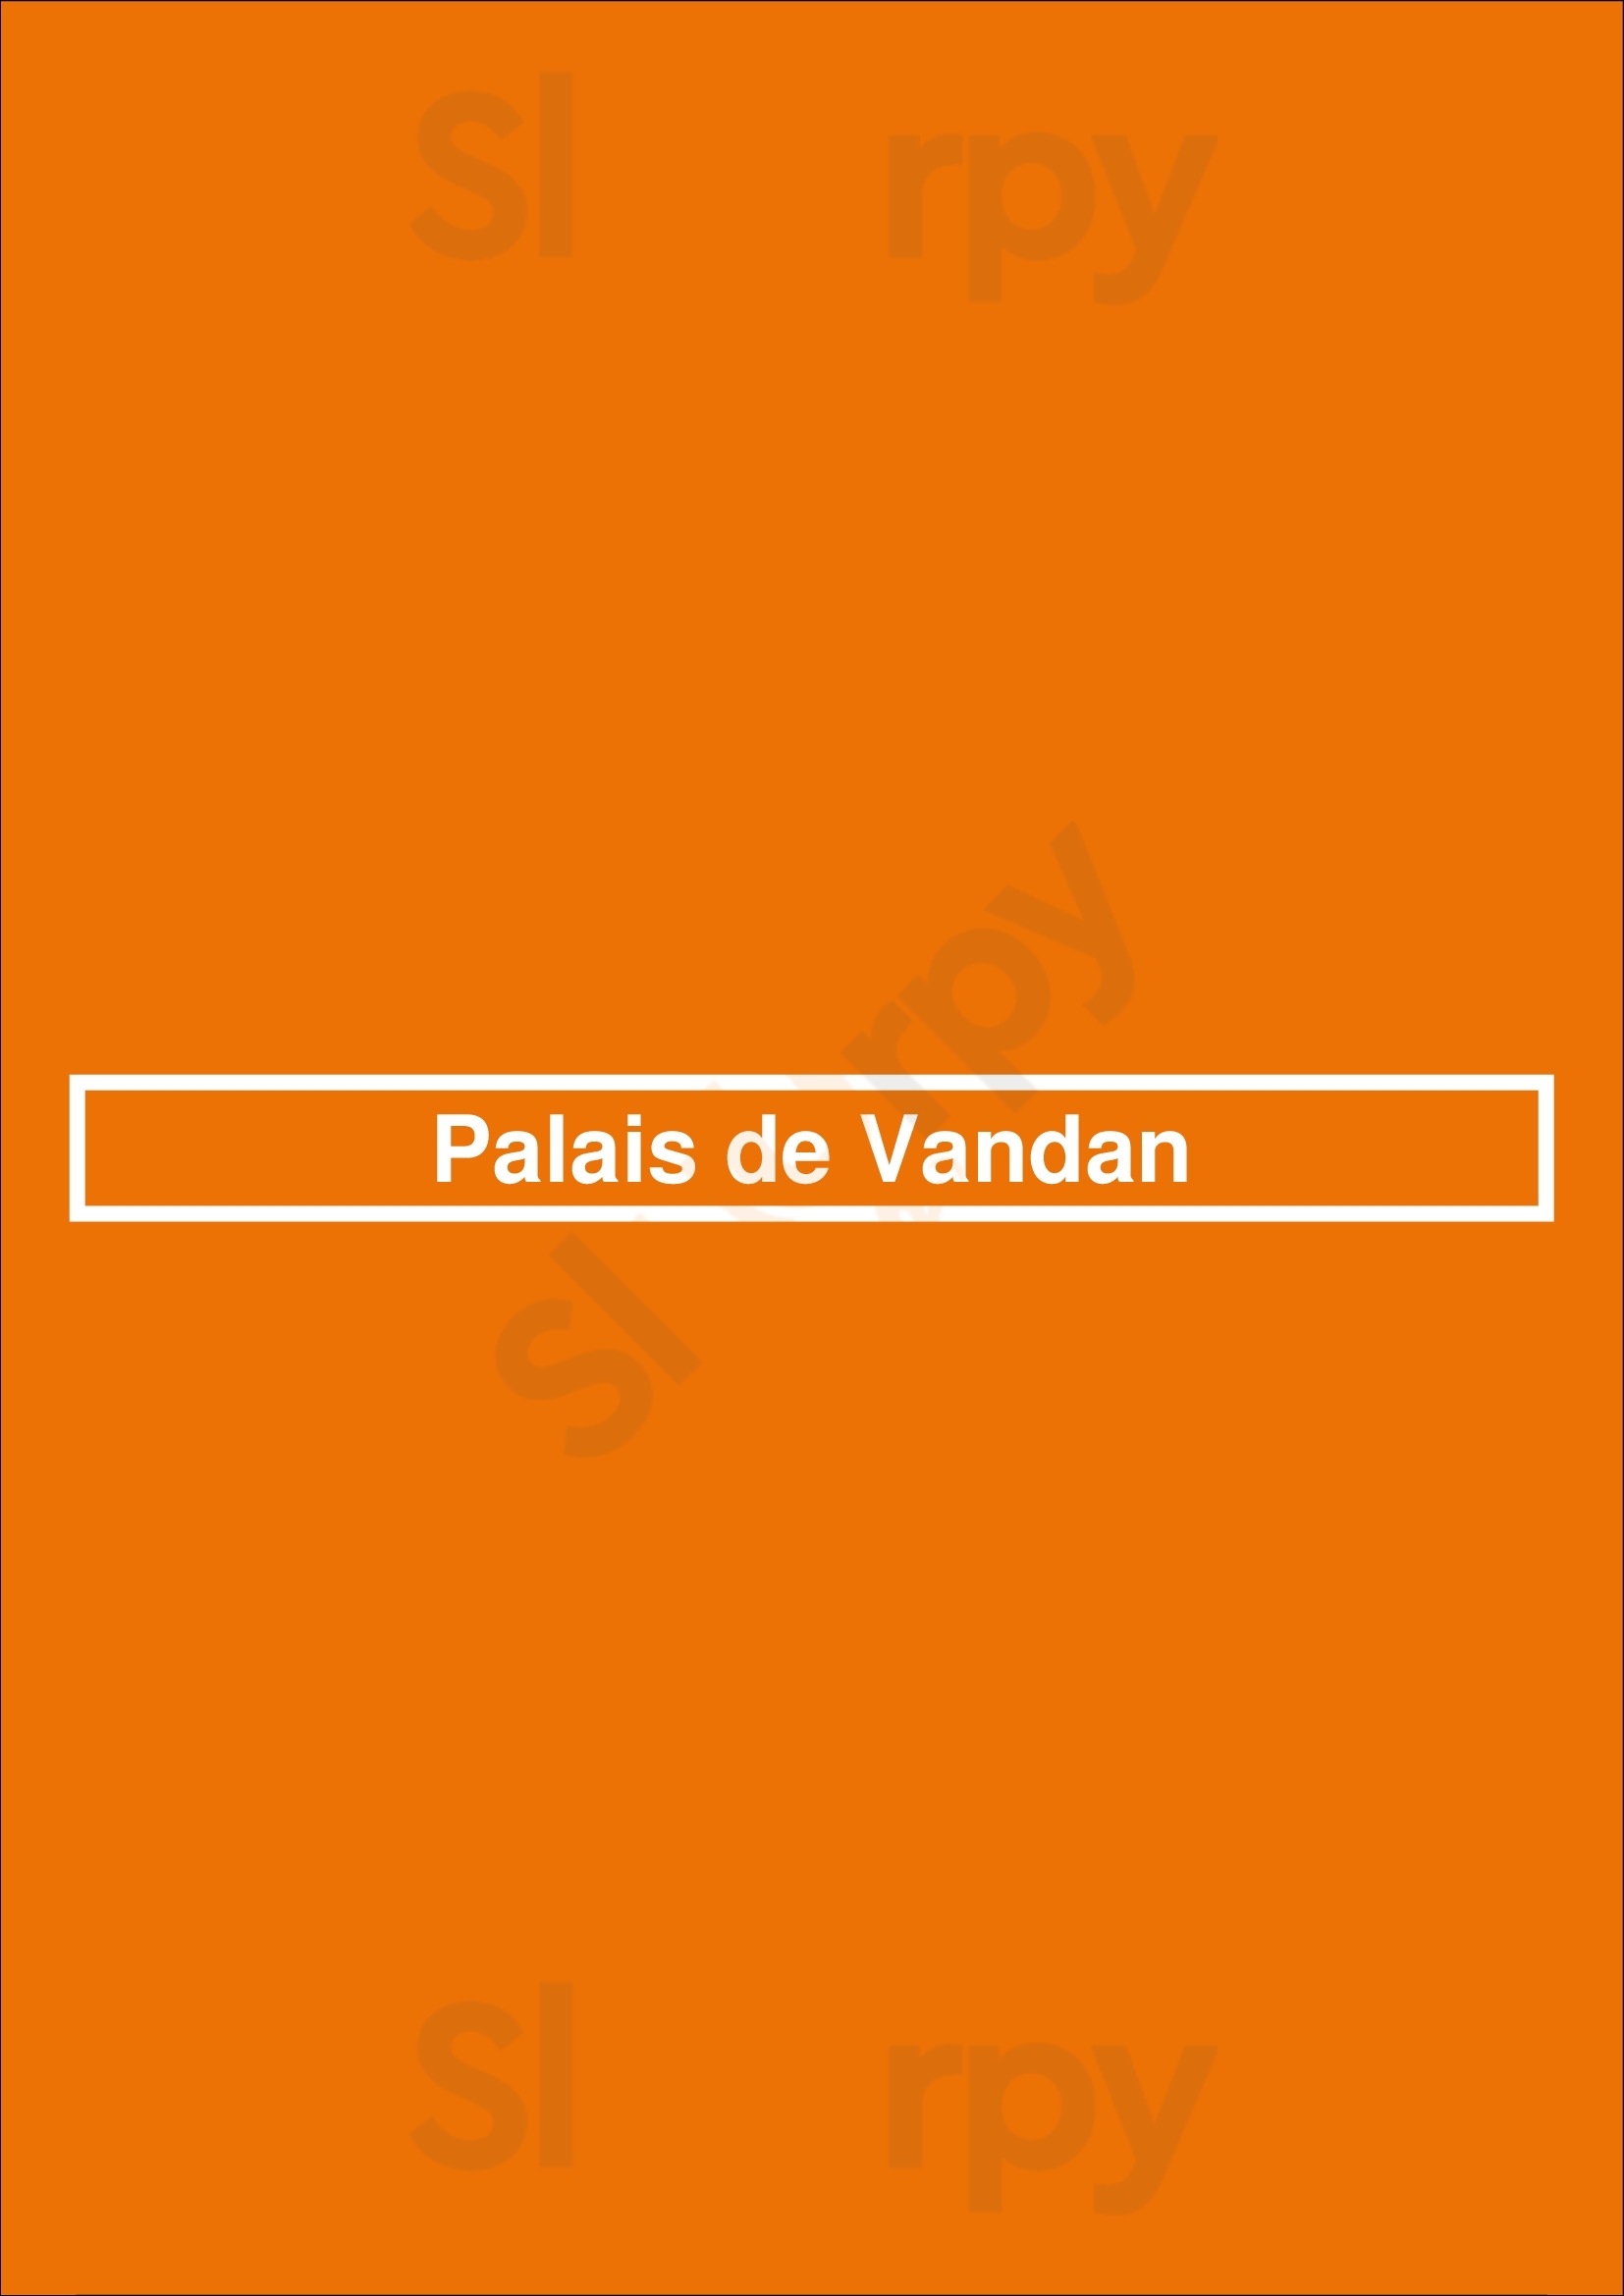 Palais De Vandan Paris Menu - 1